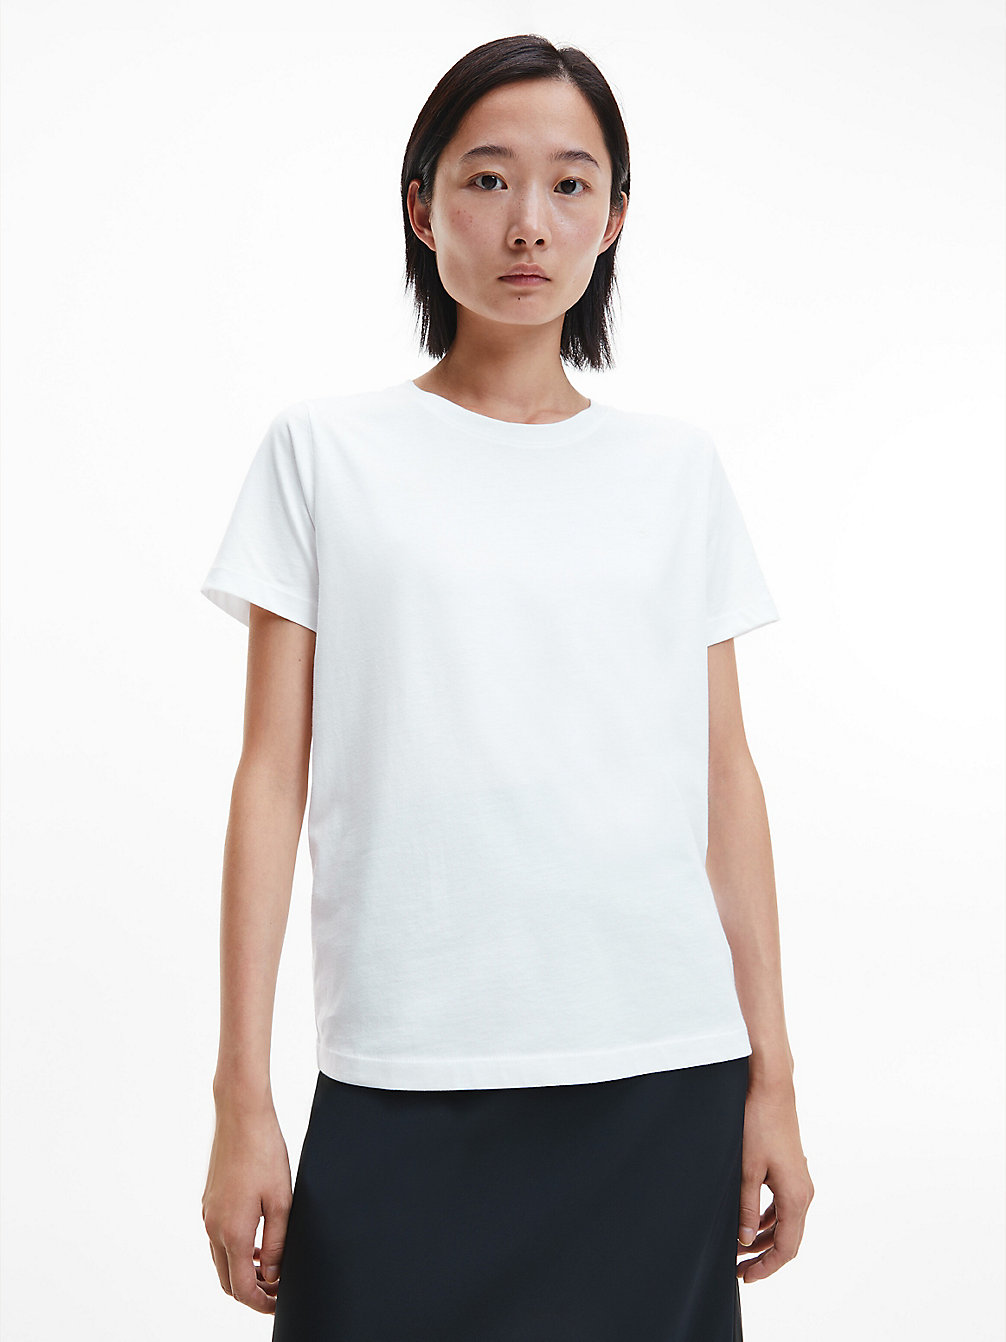 Camiseta Essential > BRIGHT WHITE > undefined mujer > Calvin Klein